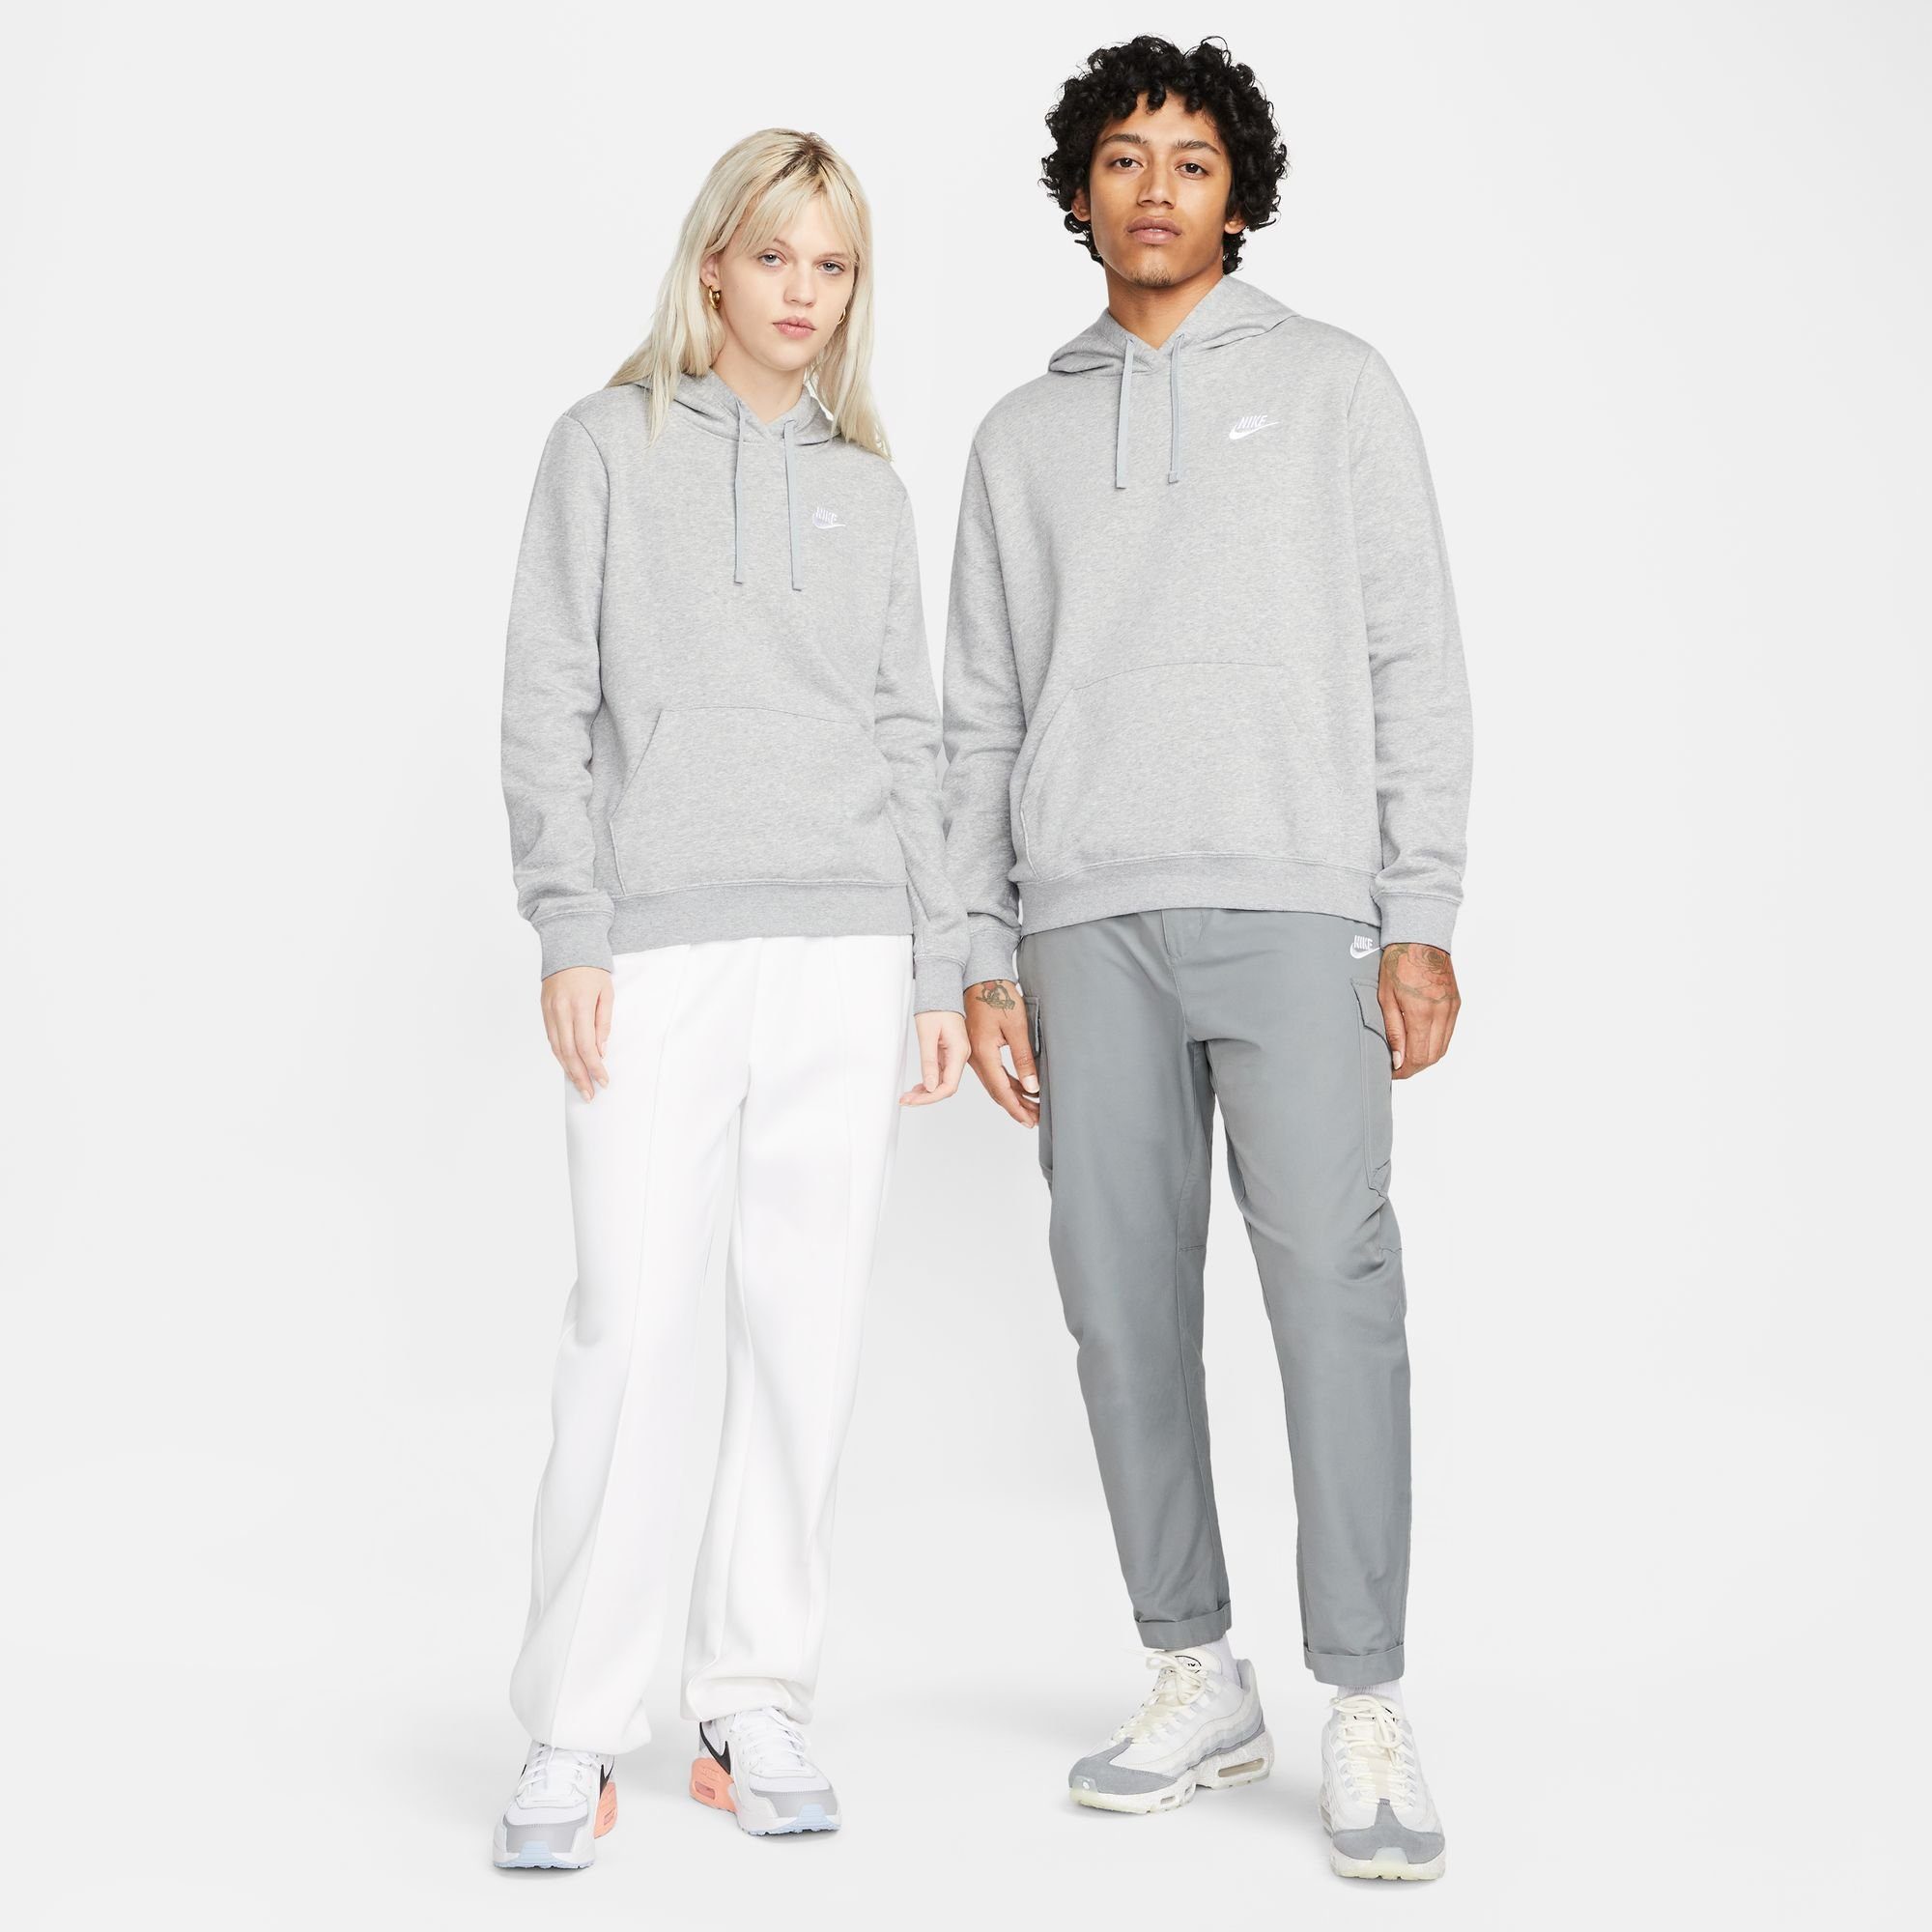 DK Kapuzensweatshirt WOMEN'S Nike CLUB PULLOVER GREY HOODIE FLEECE HEATHER/WHITE Sportswear